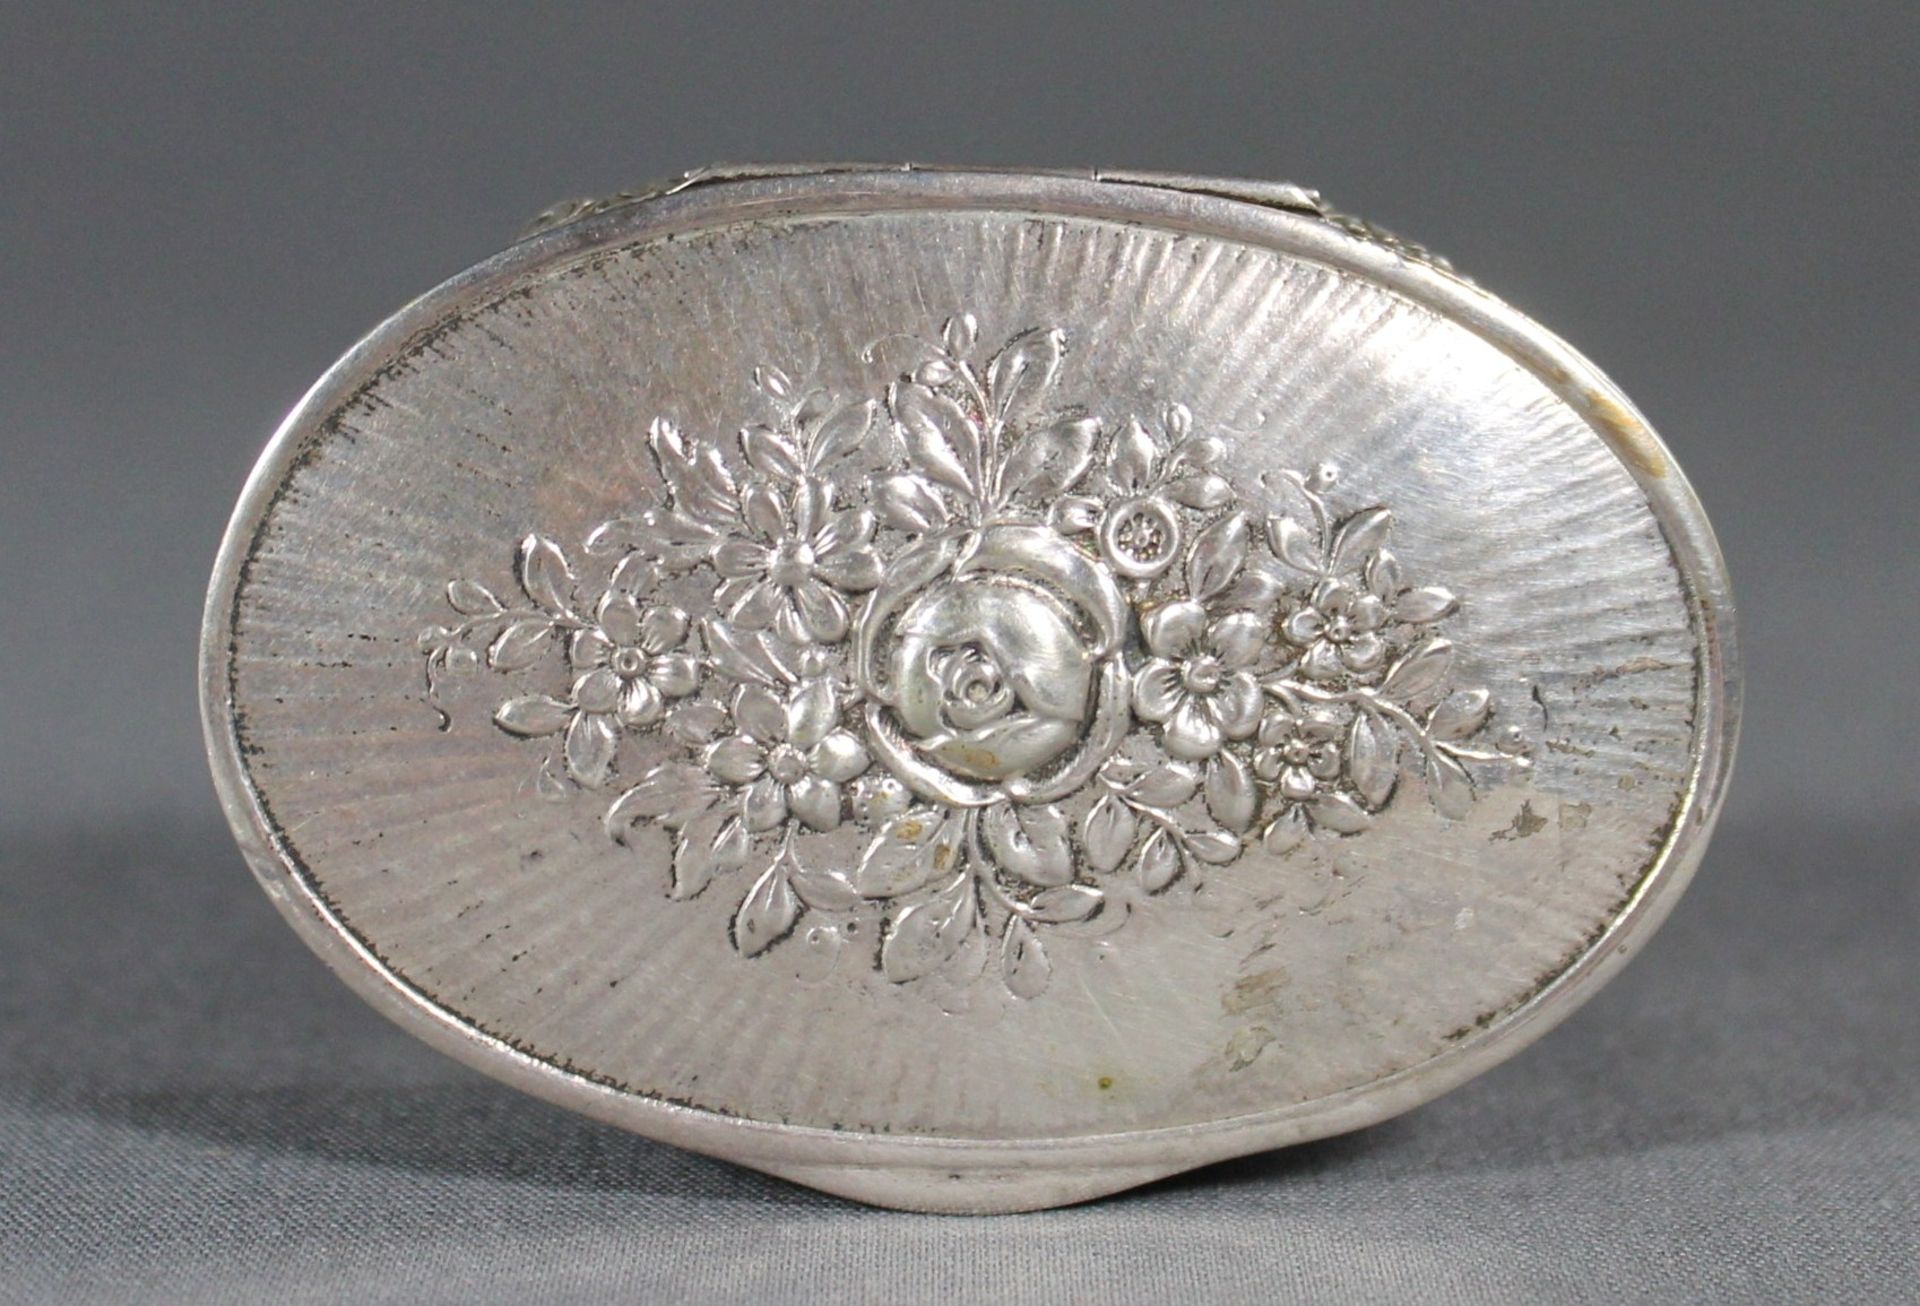 1 ovale Dose Silber (800/000), punziert, Deckel und Wandung mit getriebenem Blumendekor, - Image 2 of 3